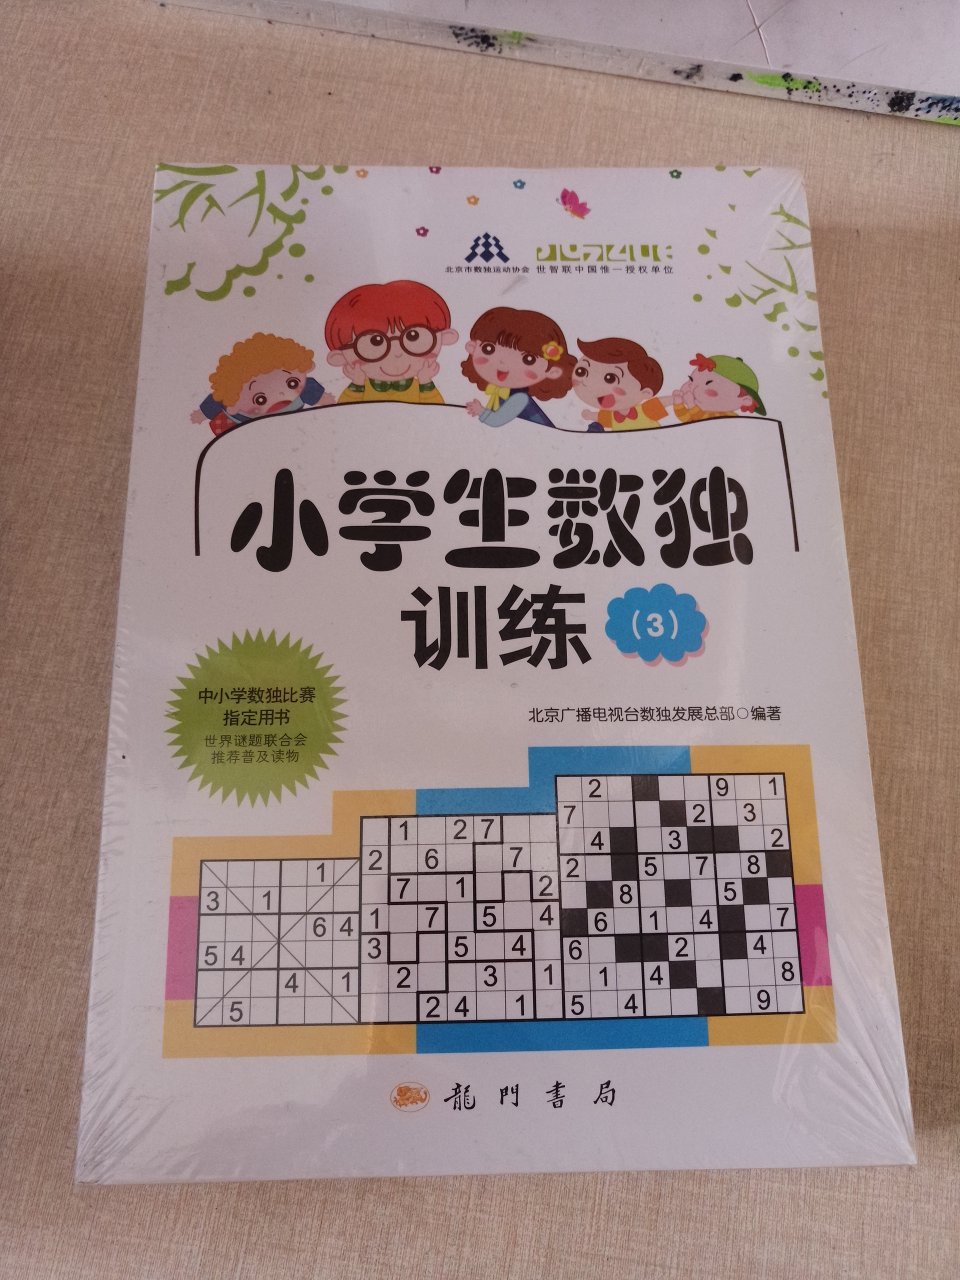 北京市读数运动协，会中小学读书比赛指定用书，提高思维能力，越玩越聪明。